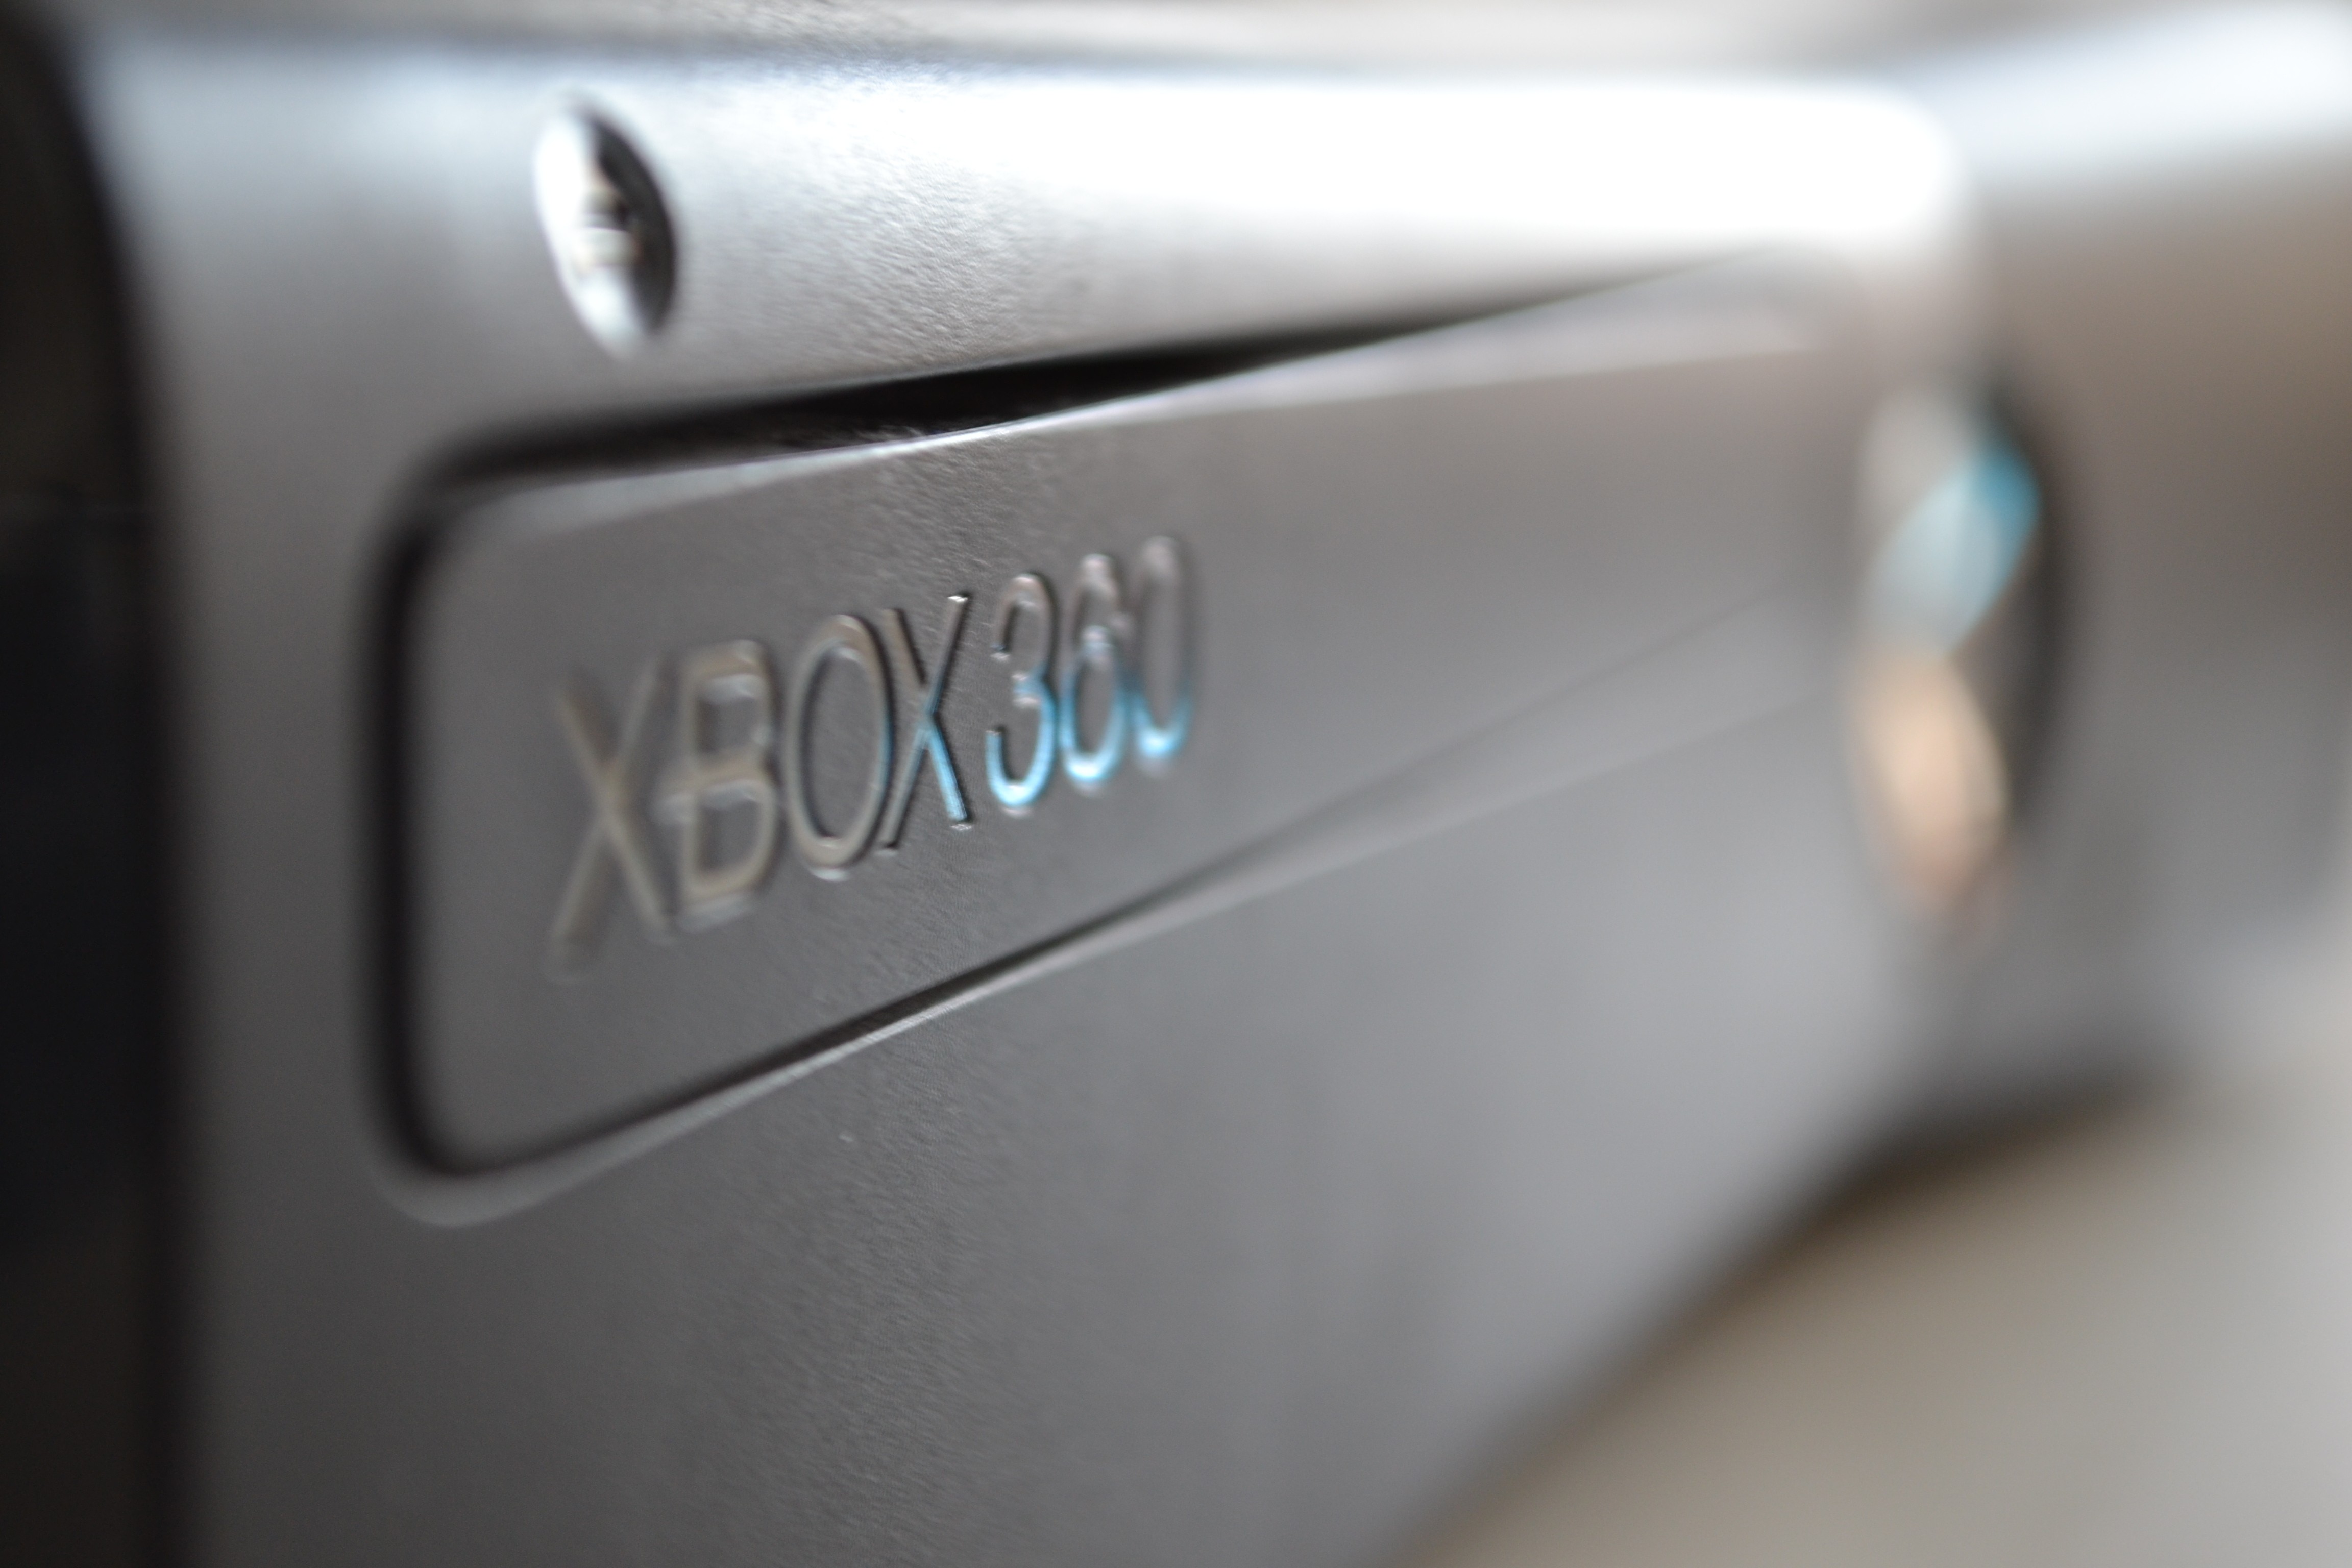 General 4608x3072 consoles Xbox 360 Xbox video games closeup